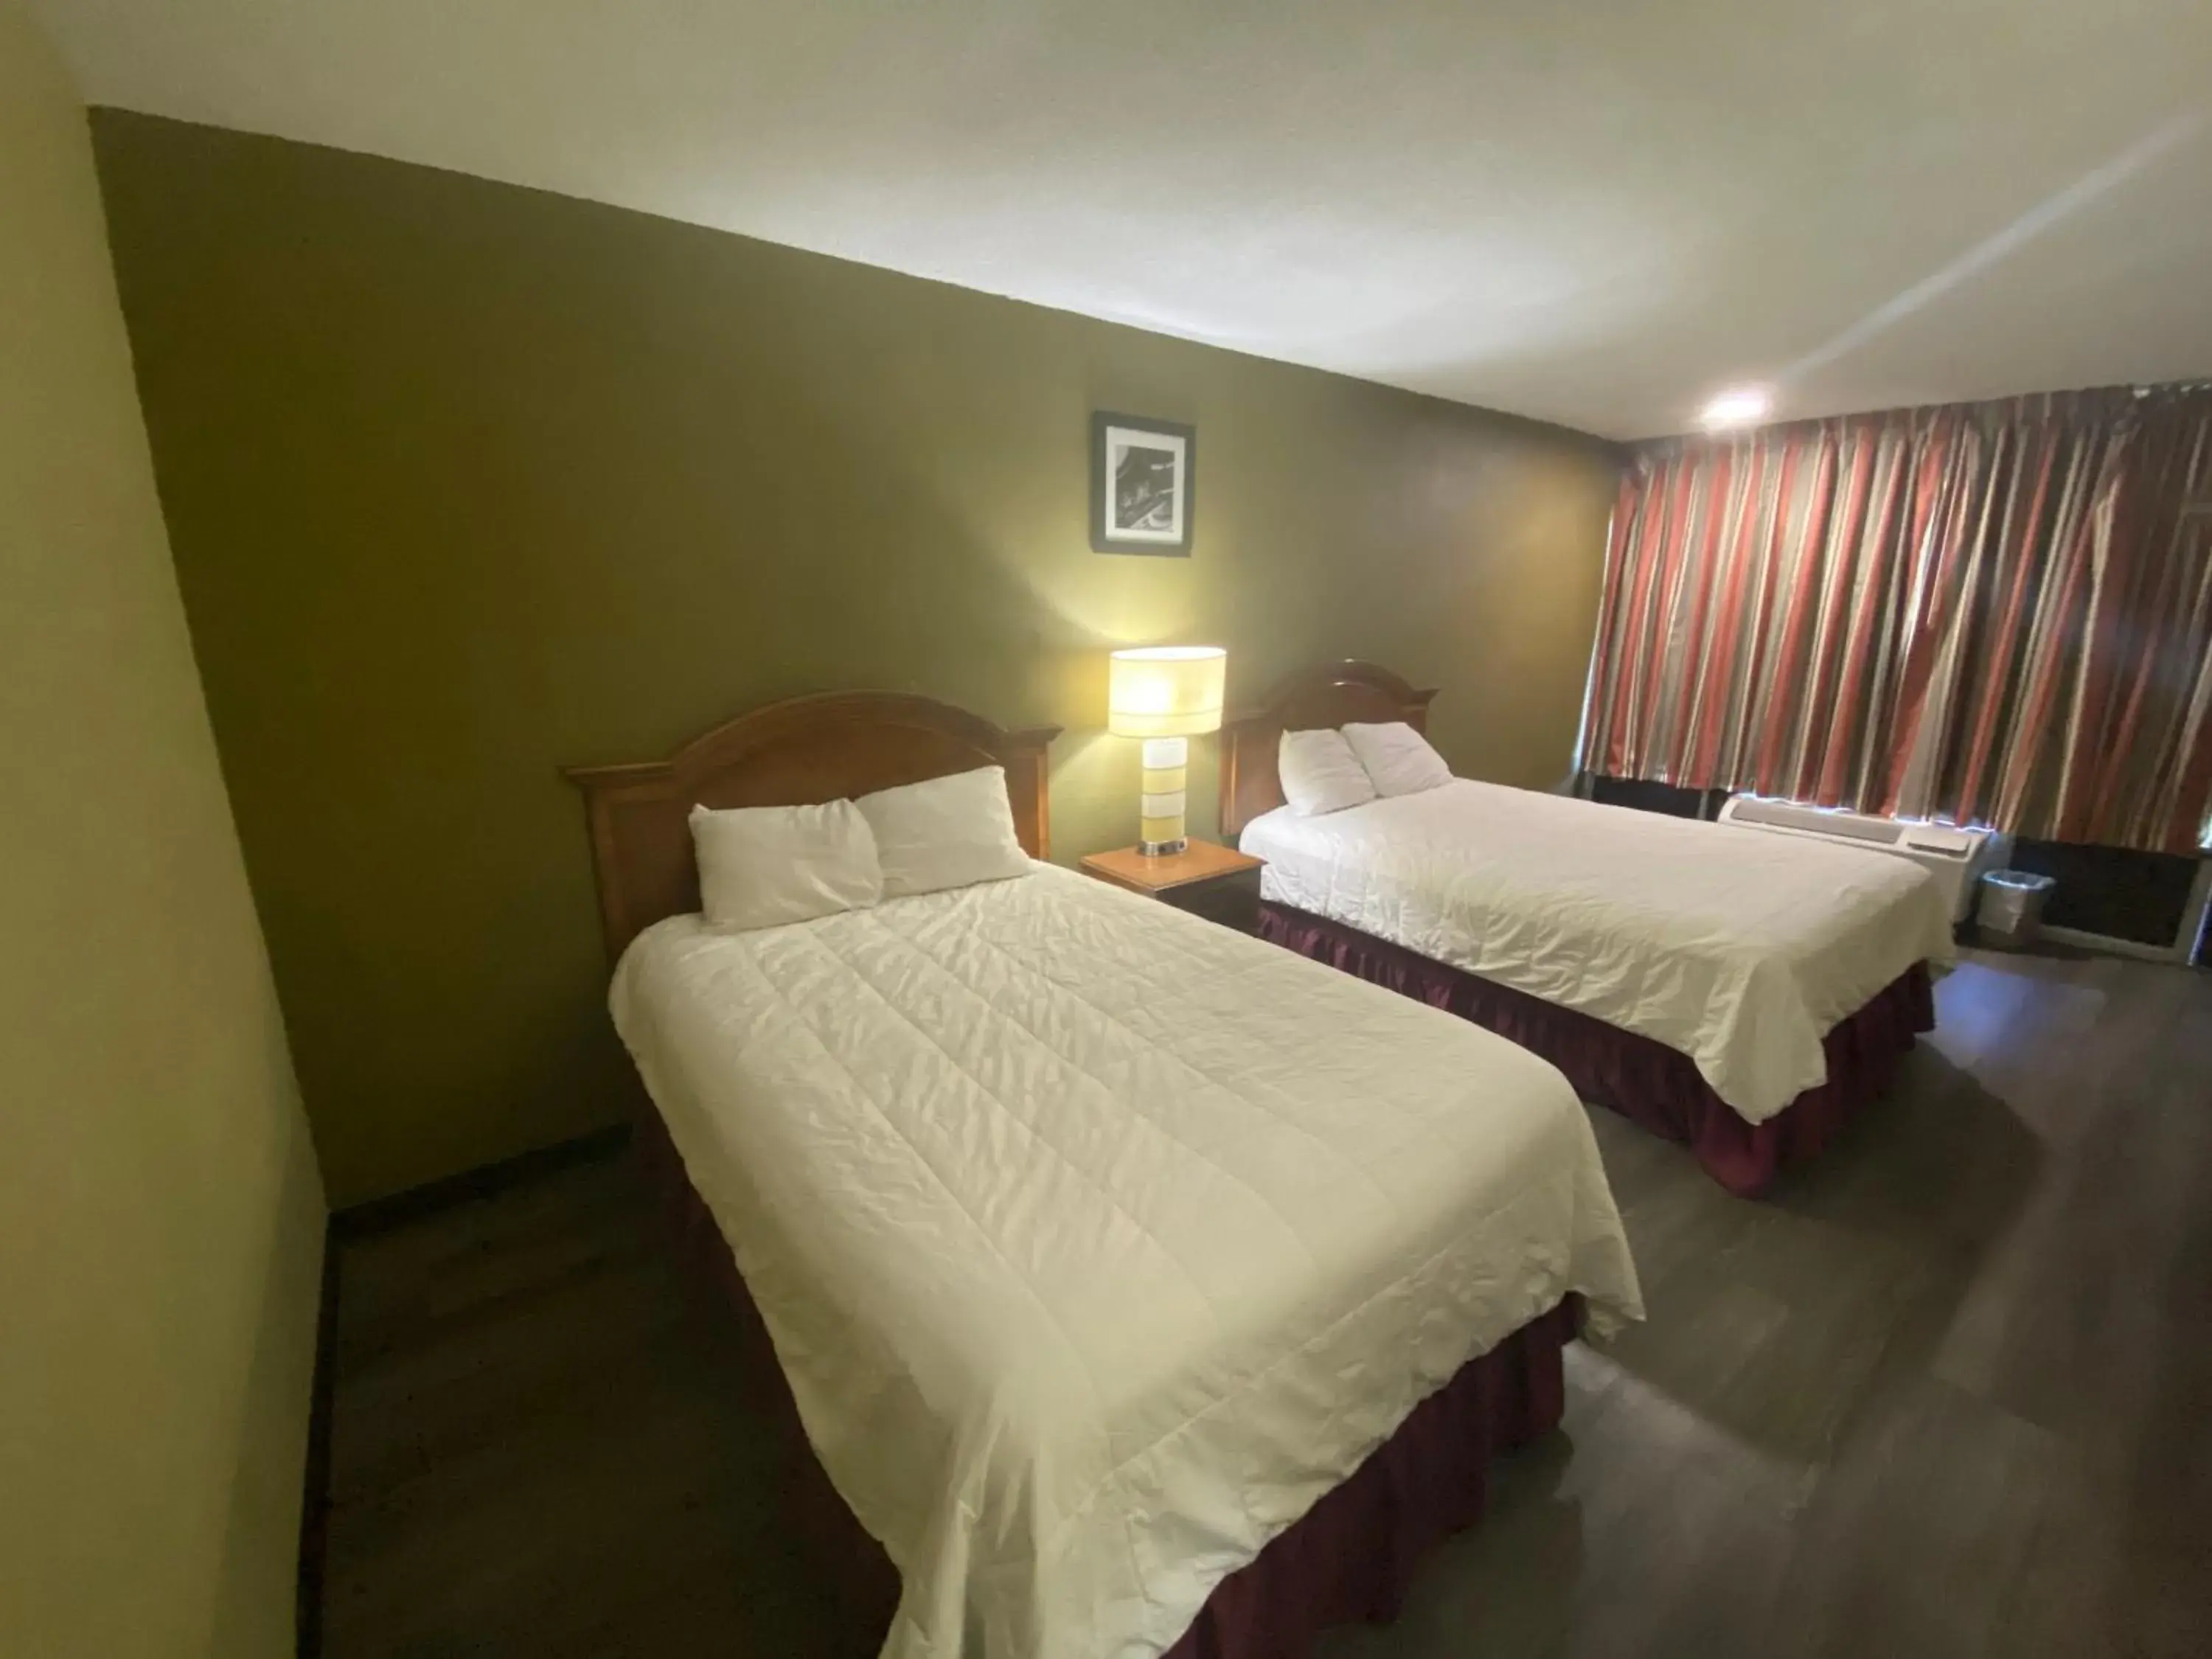 Bedroom, Bed in Americas Best Value Inn - Wilson